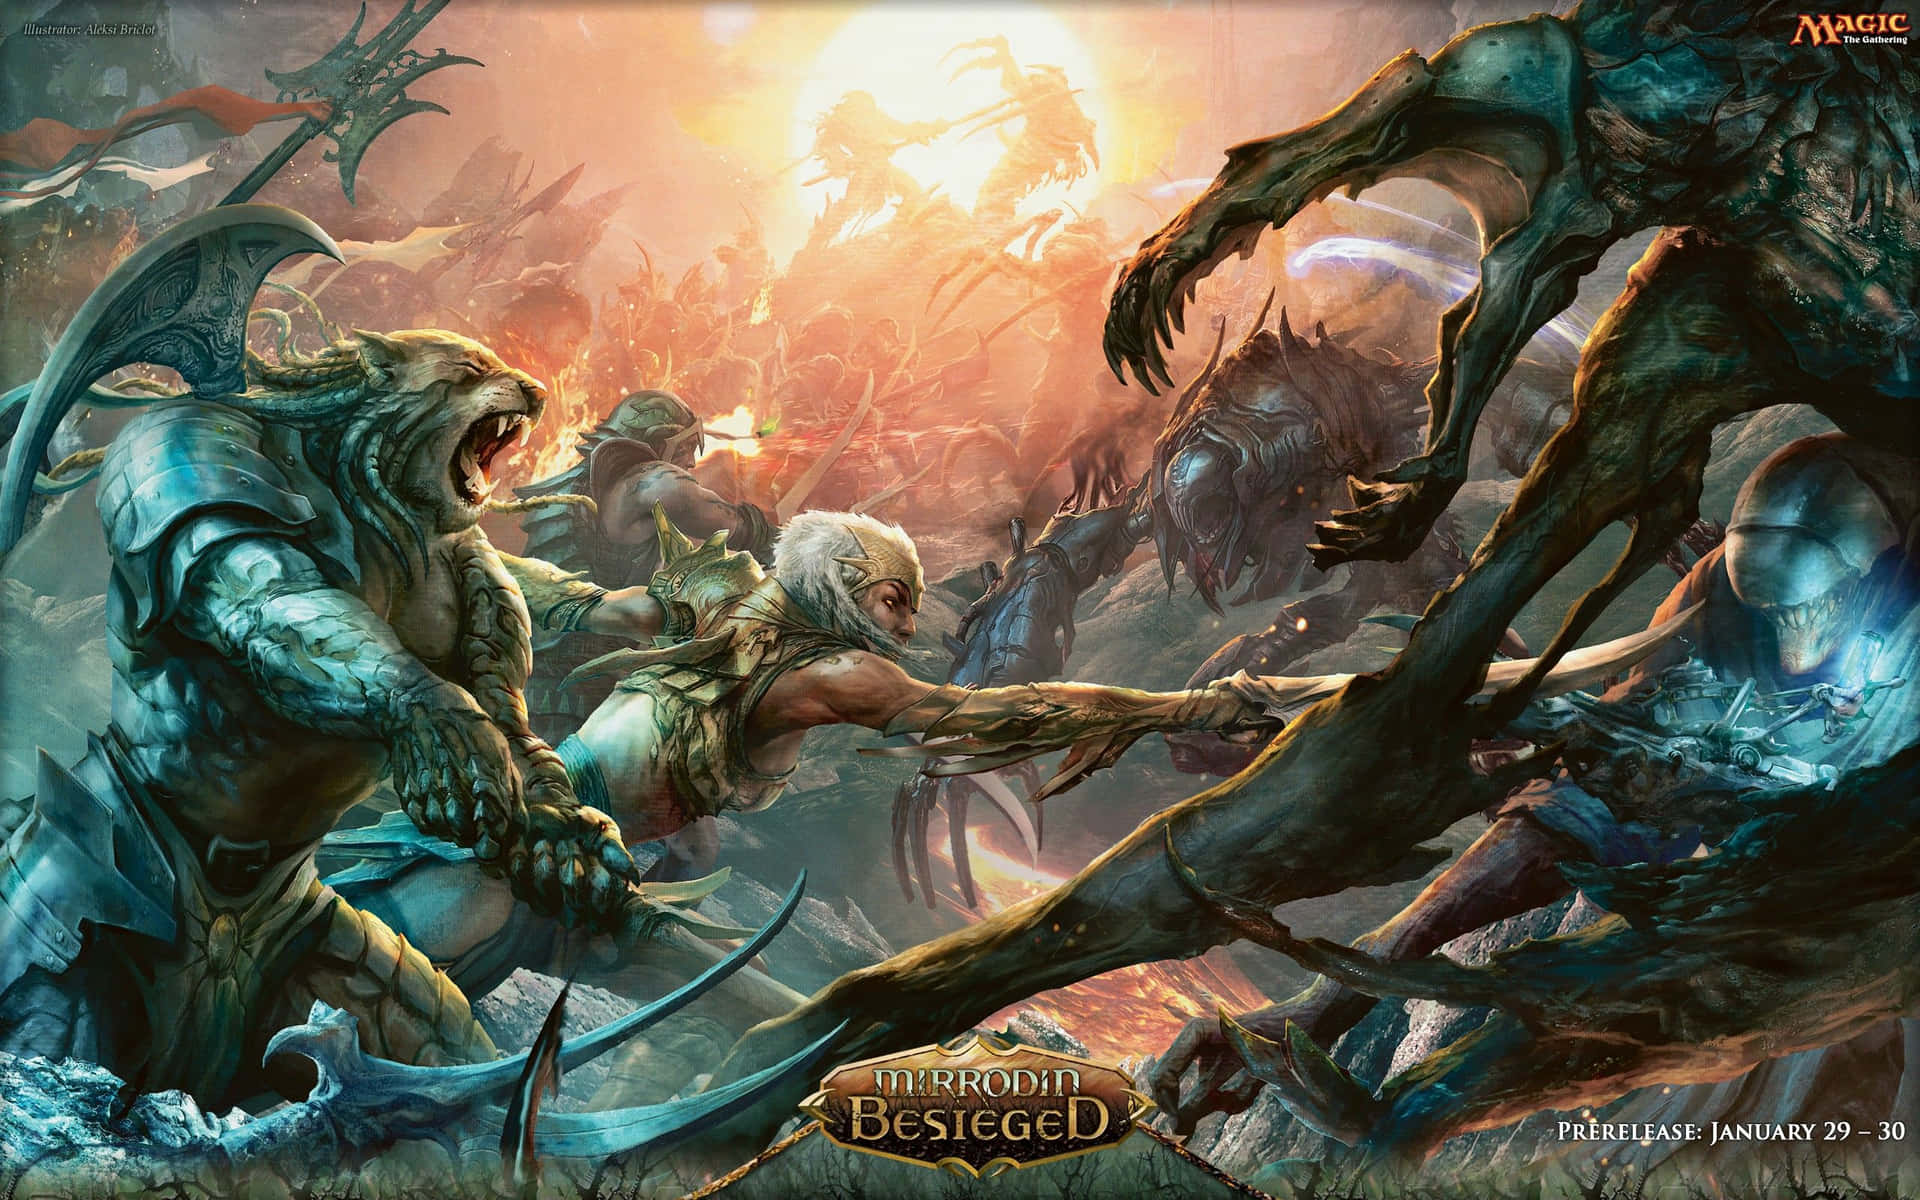 Einposter Für Das Spiel Warcraft. Wallpaper